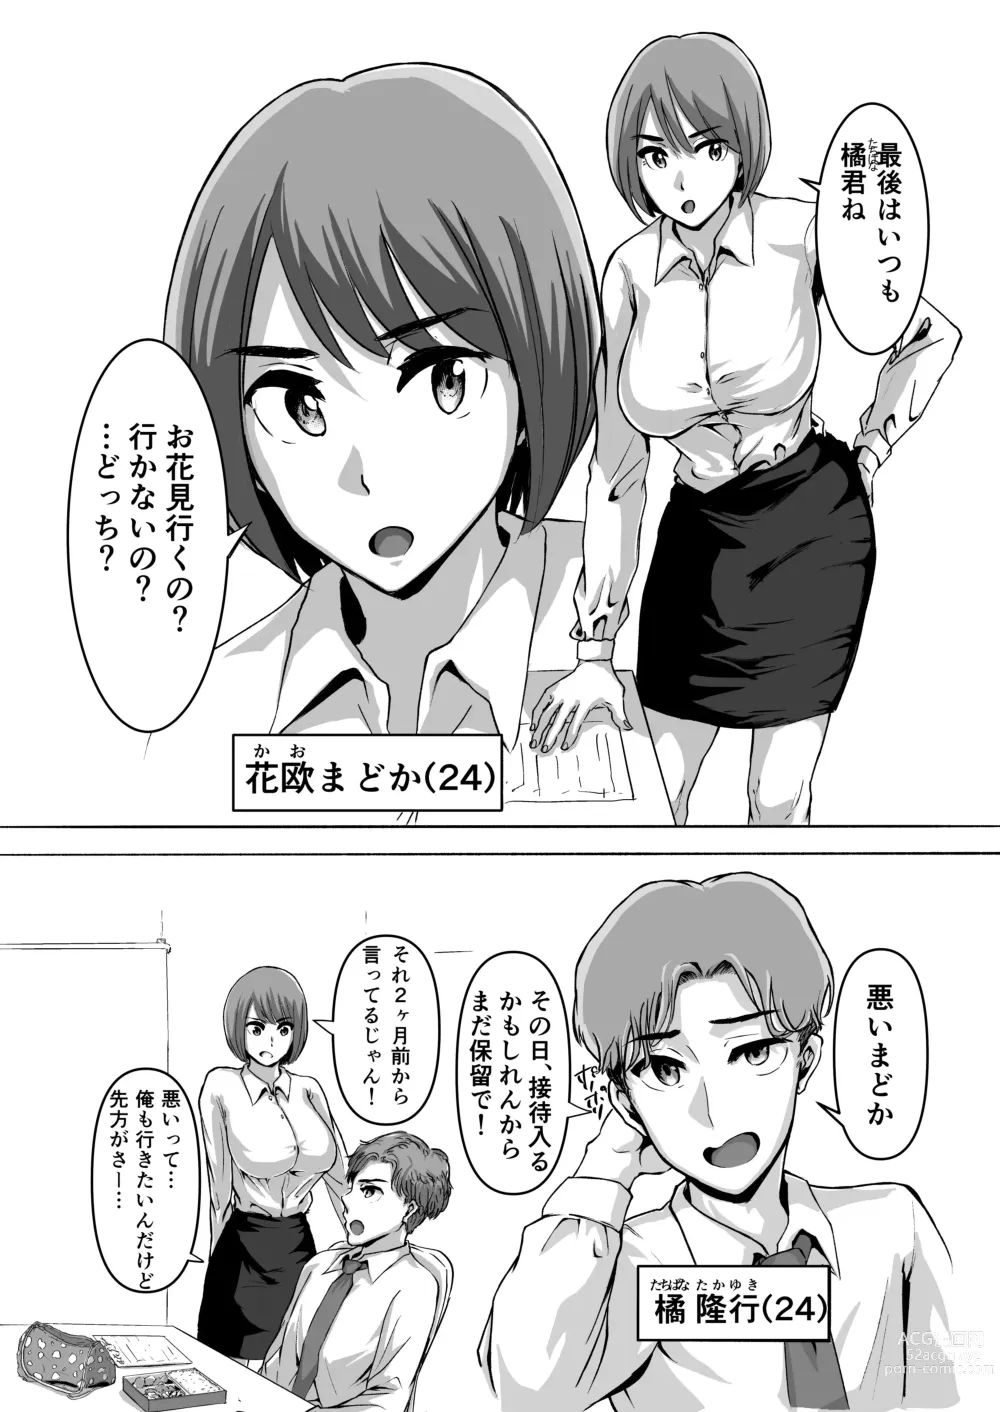 Page 5 of doujinshi Sakura no Hana Chiru Koro